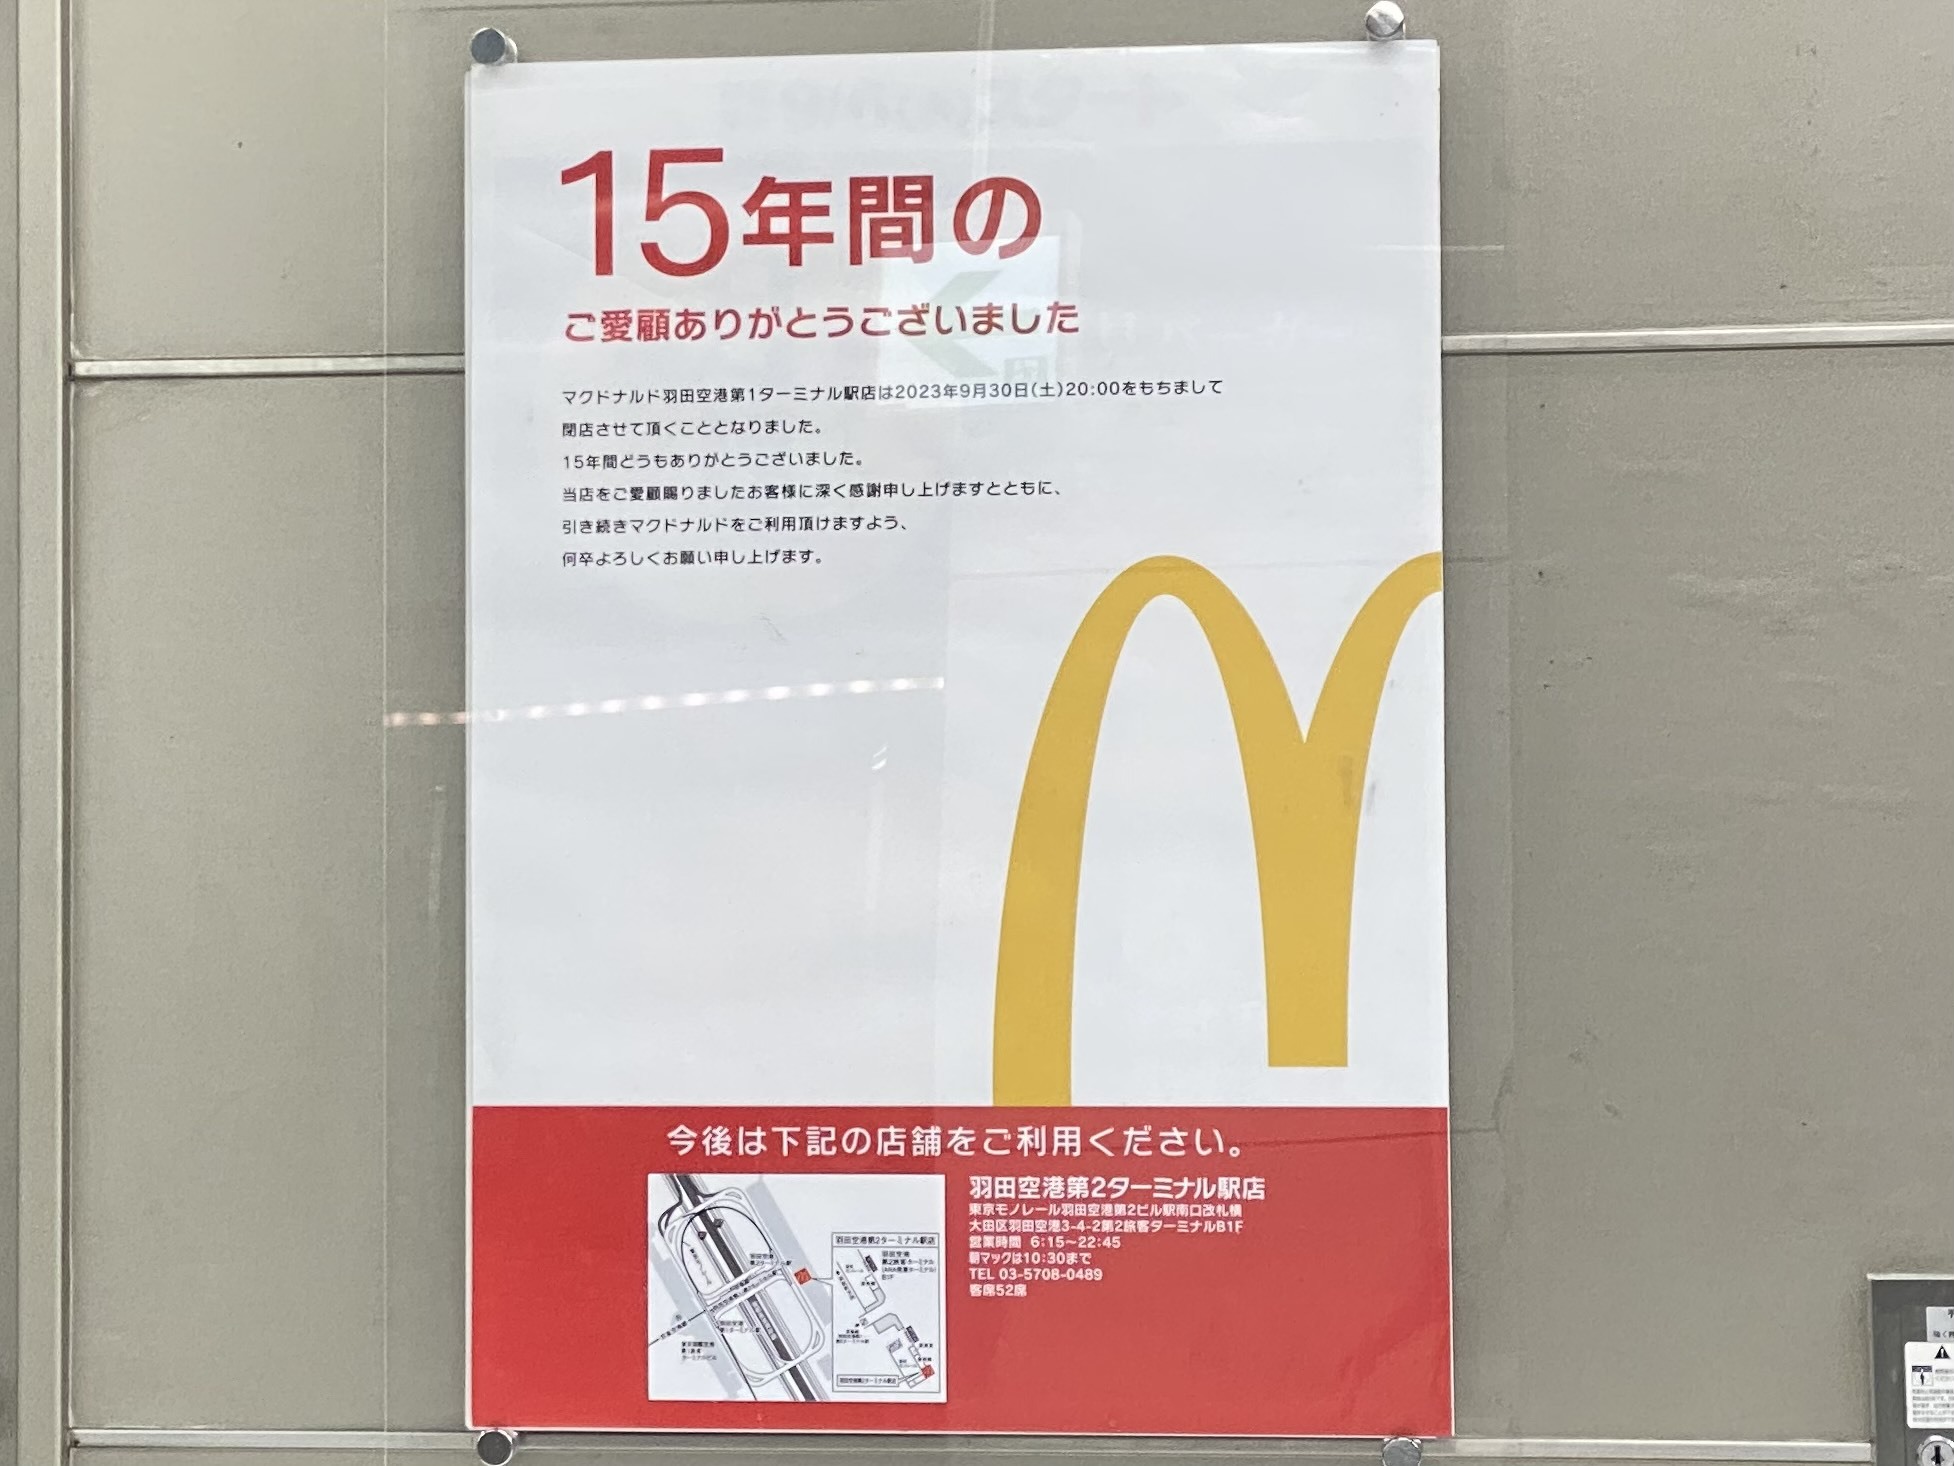 マクドナルド 羽田空港第1ターミナル駅店